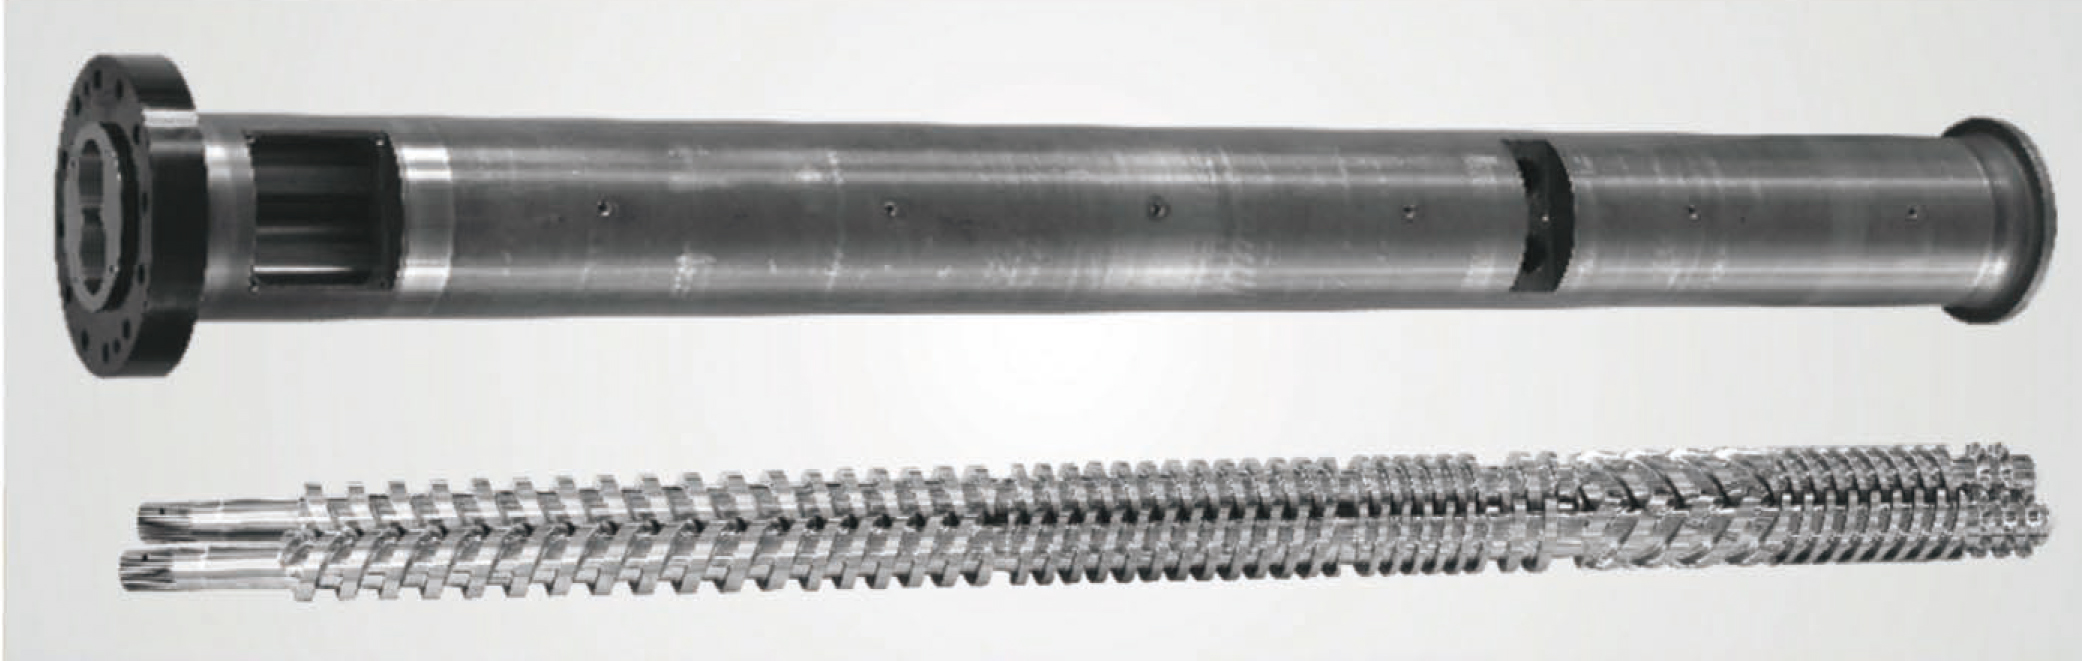 Vzporedni dvovijačni valj za PVC cev in profil